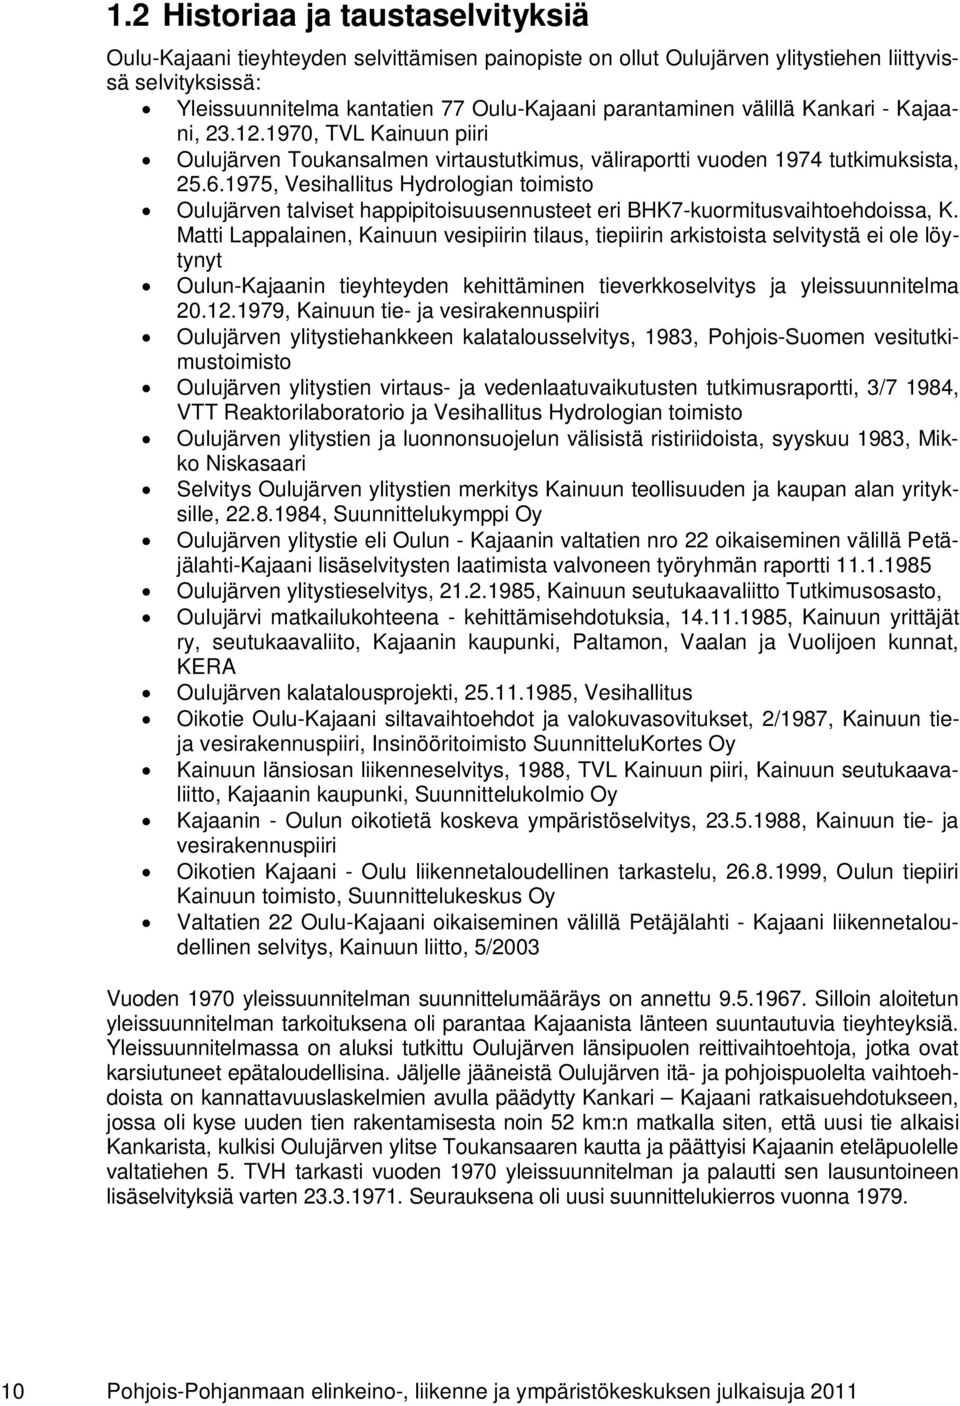 1975, Vesihallitus Hydrologian toimisto Oulujärven talviset happipitoisuusennusteet eri BHK7-kuormitusvaihtoehdoissa, K.